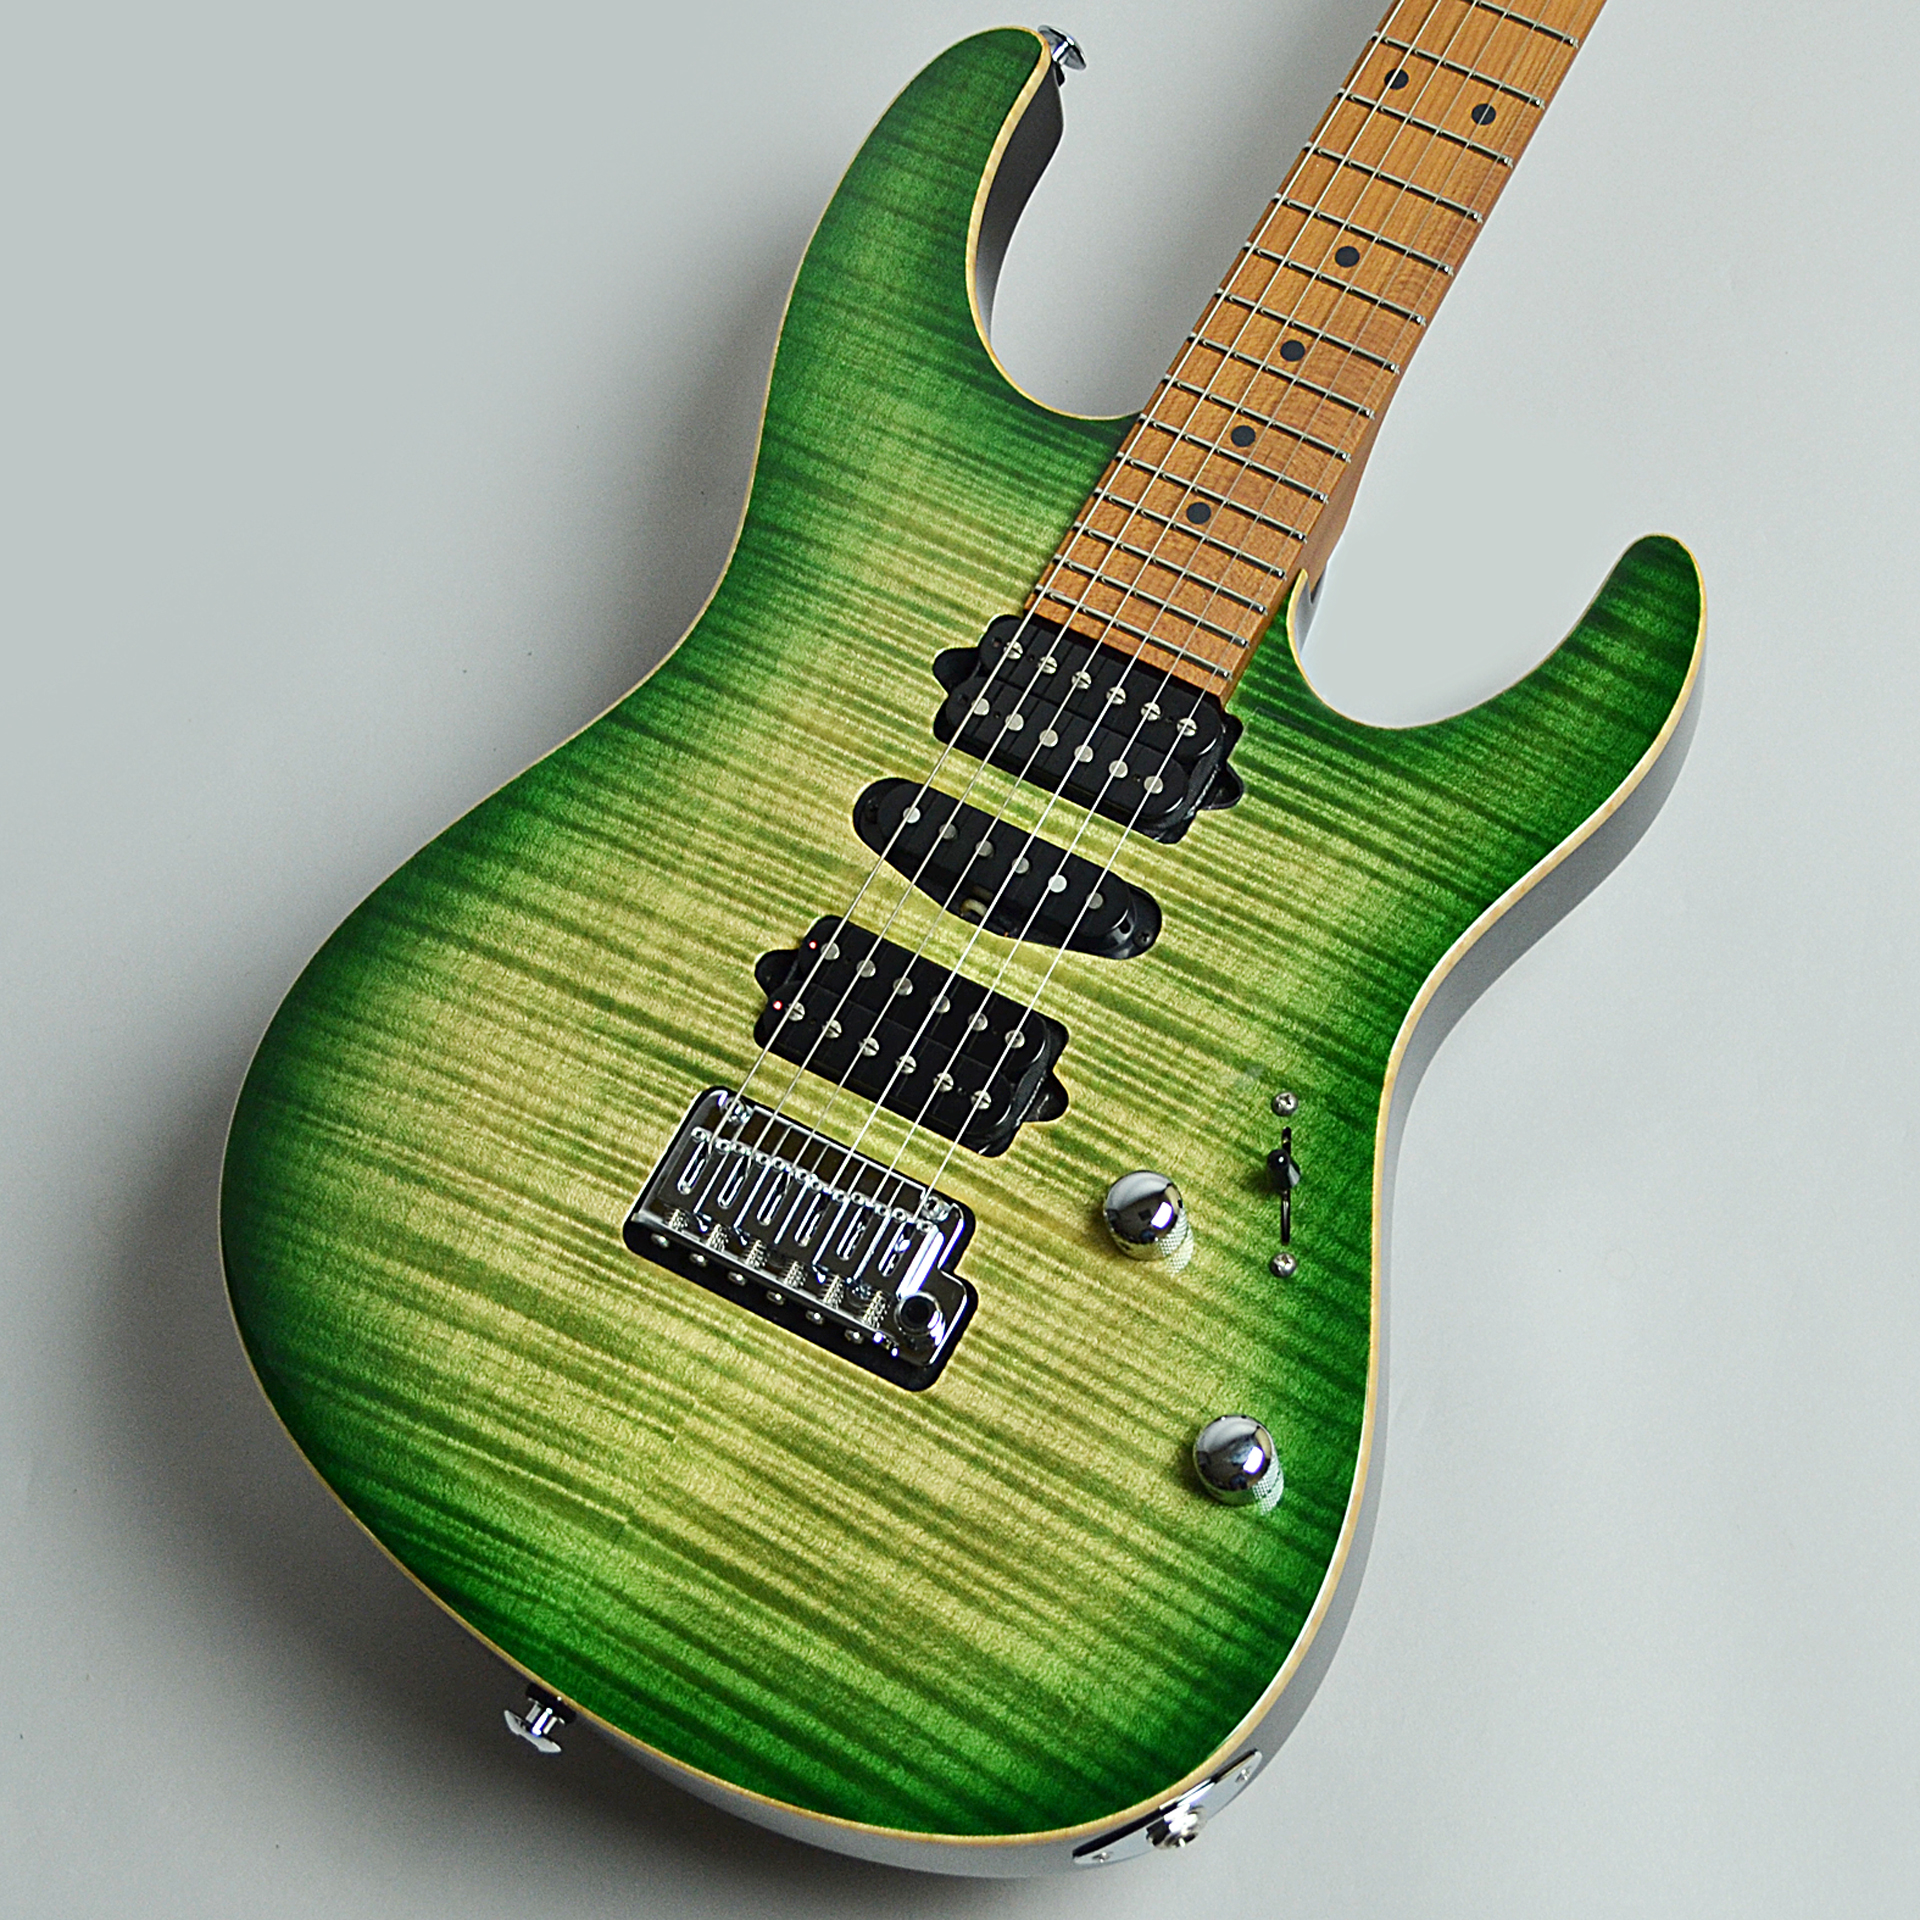 *「J Select Modern Plus Faded Trans Green Burst / Roasted Maple」 美しいフレイムメイプルのSuhr Guitarとのコラボレーションにより誕生した日本国内限定仕様が入荷しました。 |*ブランド|Suhr| |*型番|J Select Mo […]